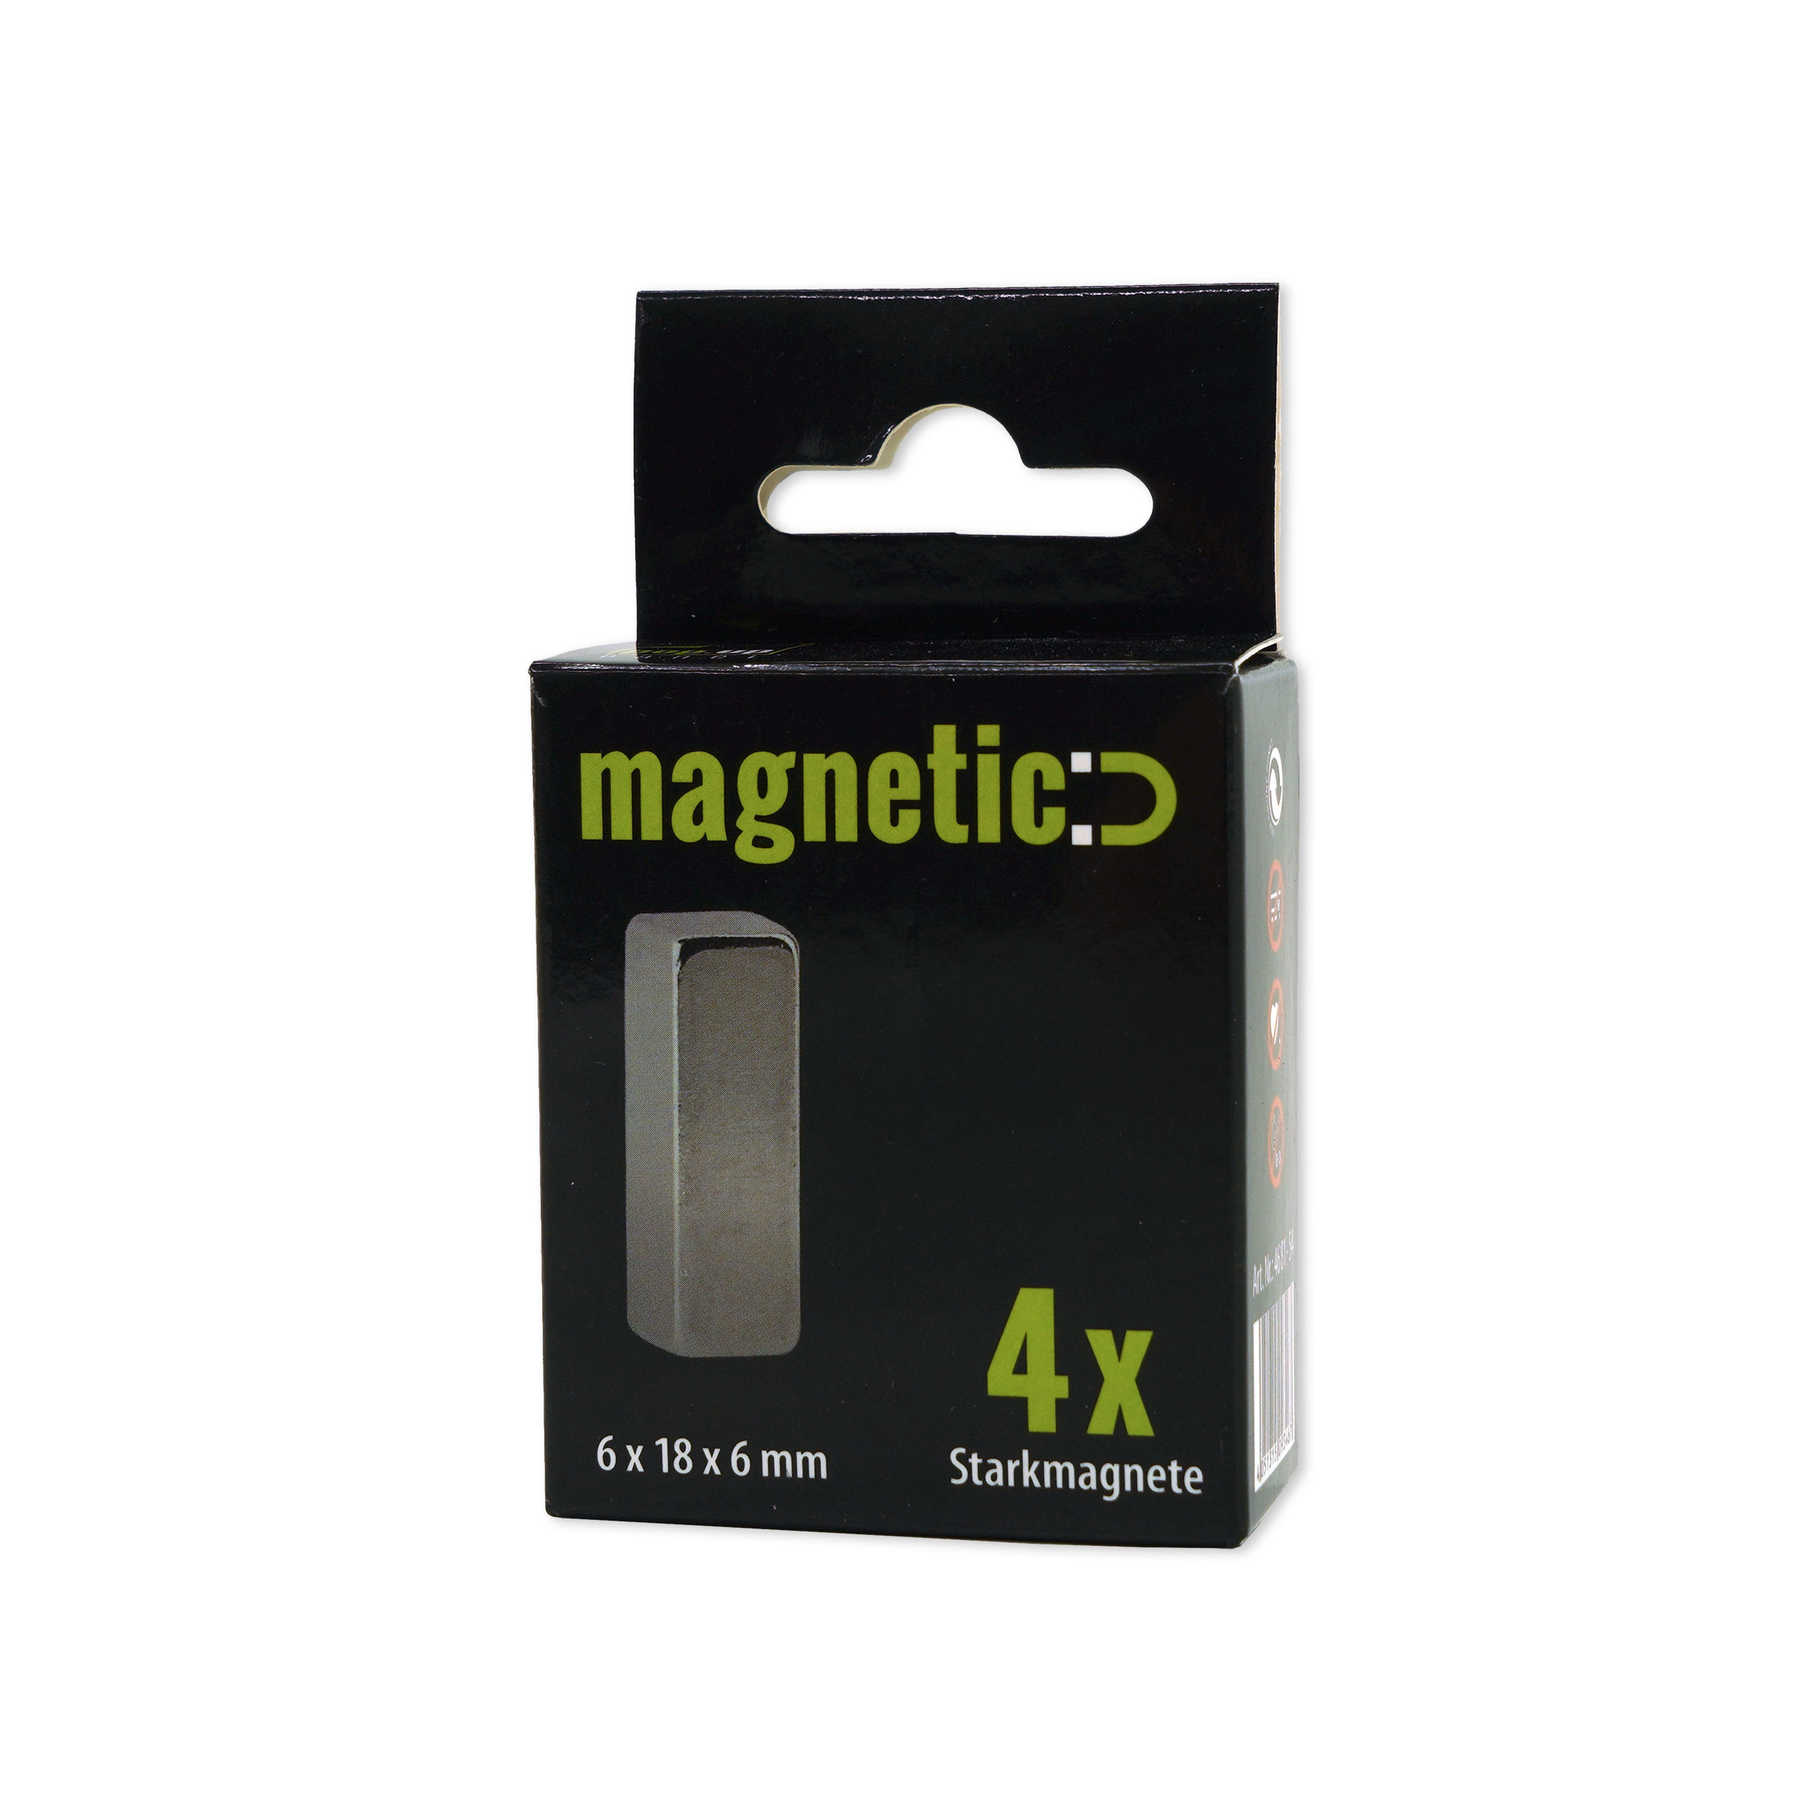             Set van 4 magneten in 6 x 18 x 6 mm
        